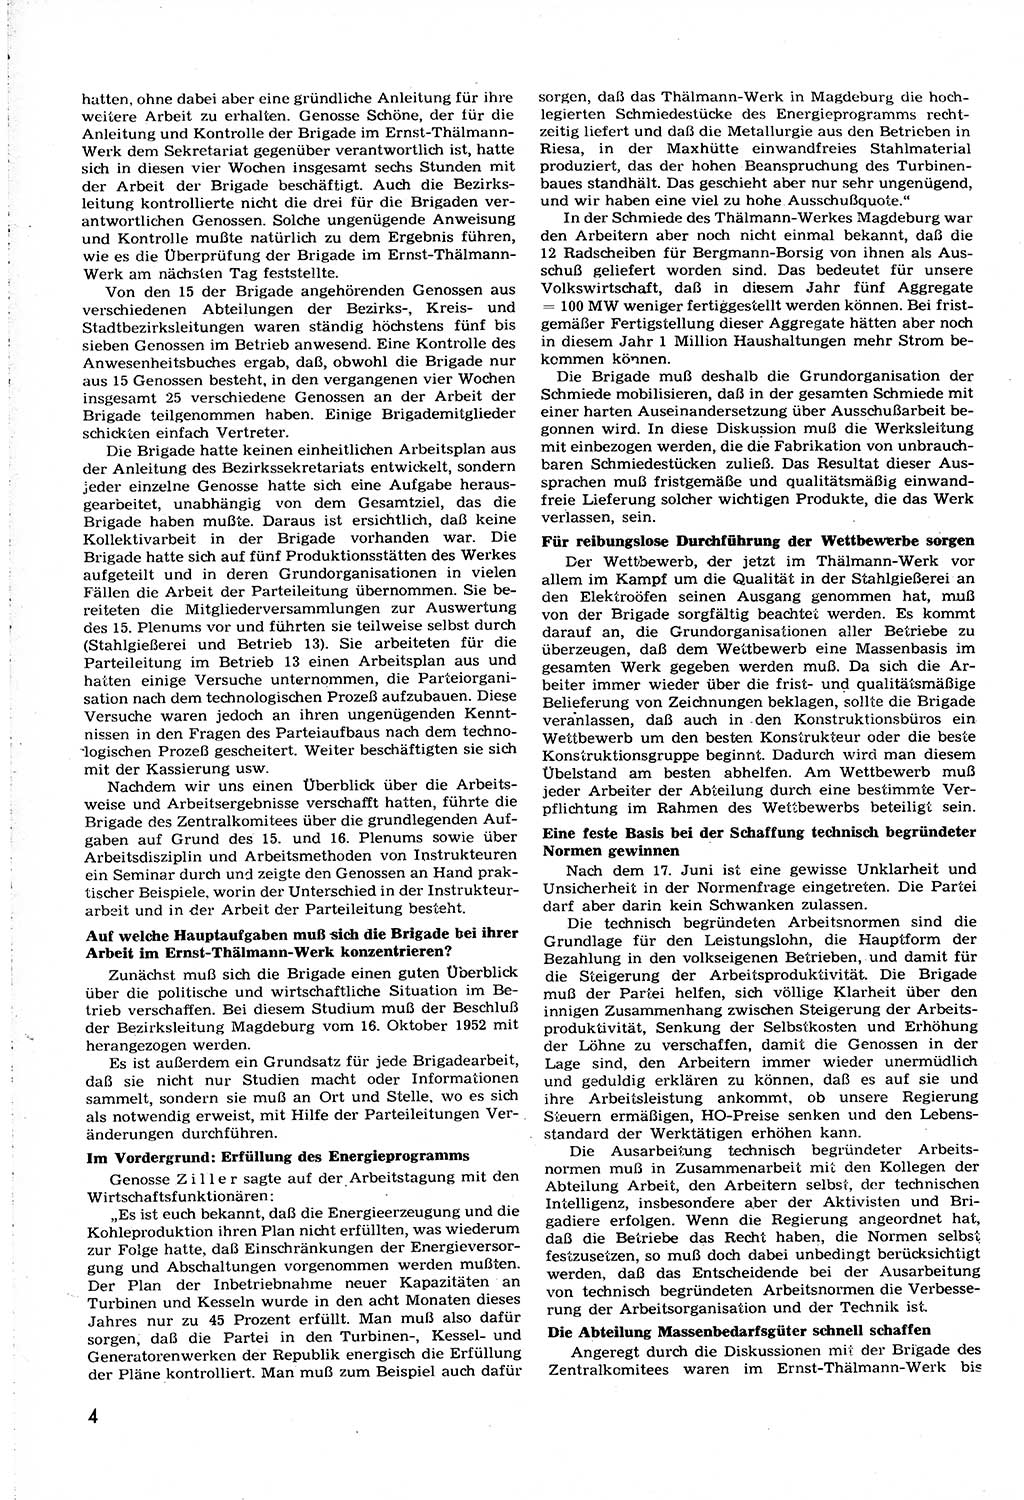 Neuer Weg (NW), Organ des Zentralkomitees (ZK) [Sozialistische Einheitspartei Deutschlands (SED)] für alle Parteiarbeiter, 8. Jahrgang [Deutsche Demokratische Republik (DDR)] 1953, Heft 20/4 (NW ZK SED DDR 1953, H. 20/4)